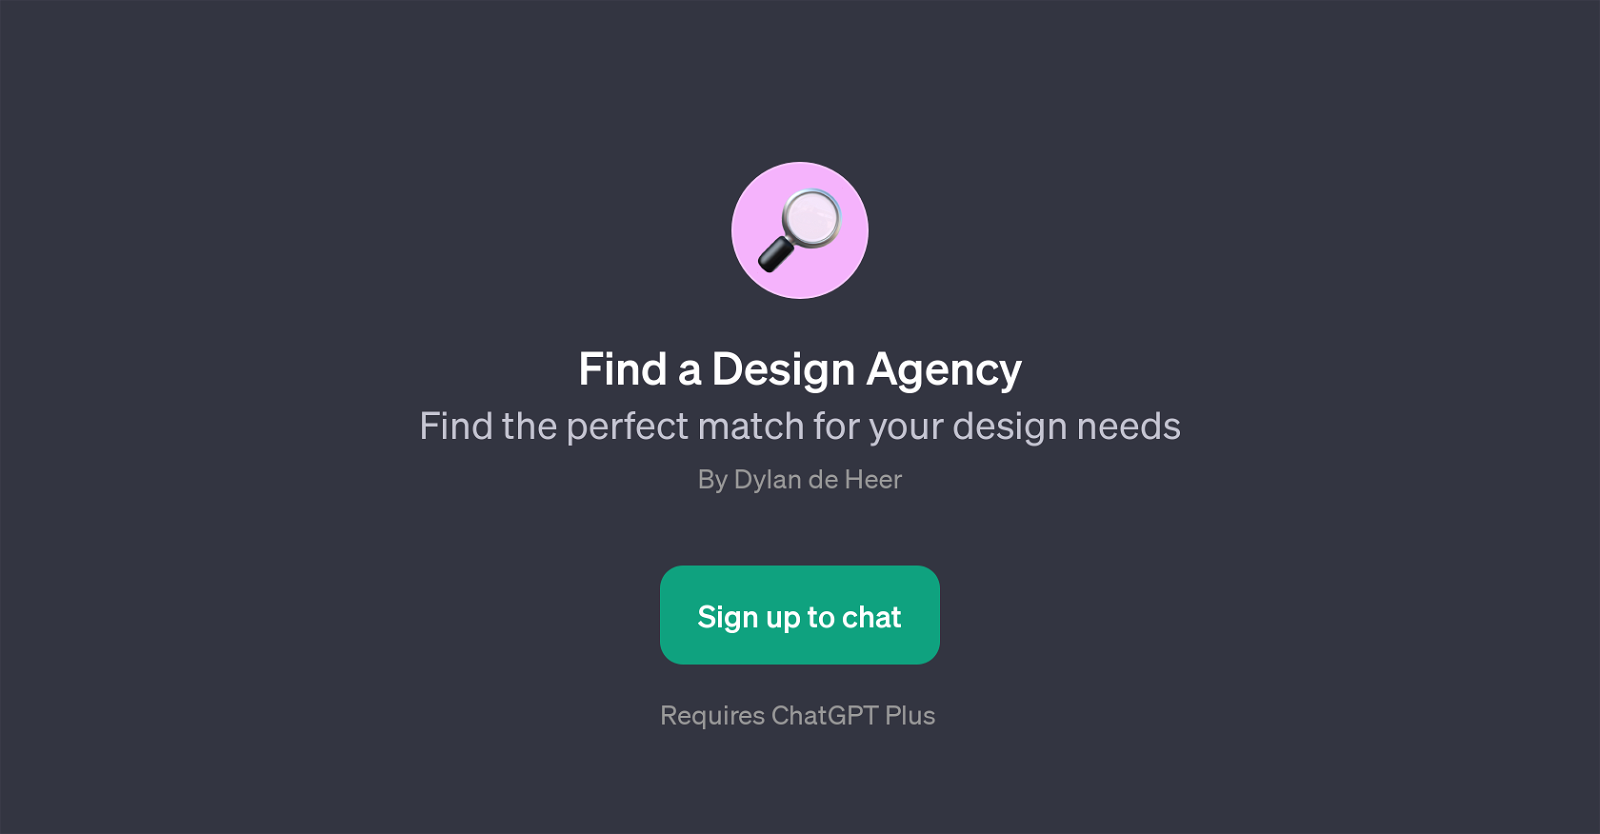 Find a Design Agency website